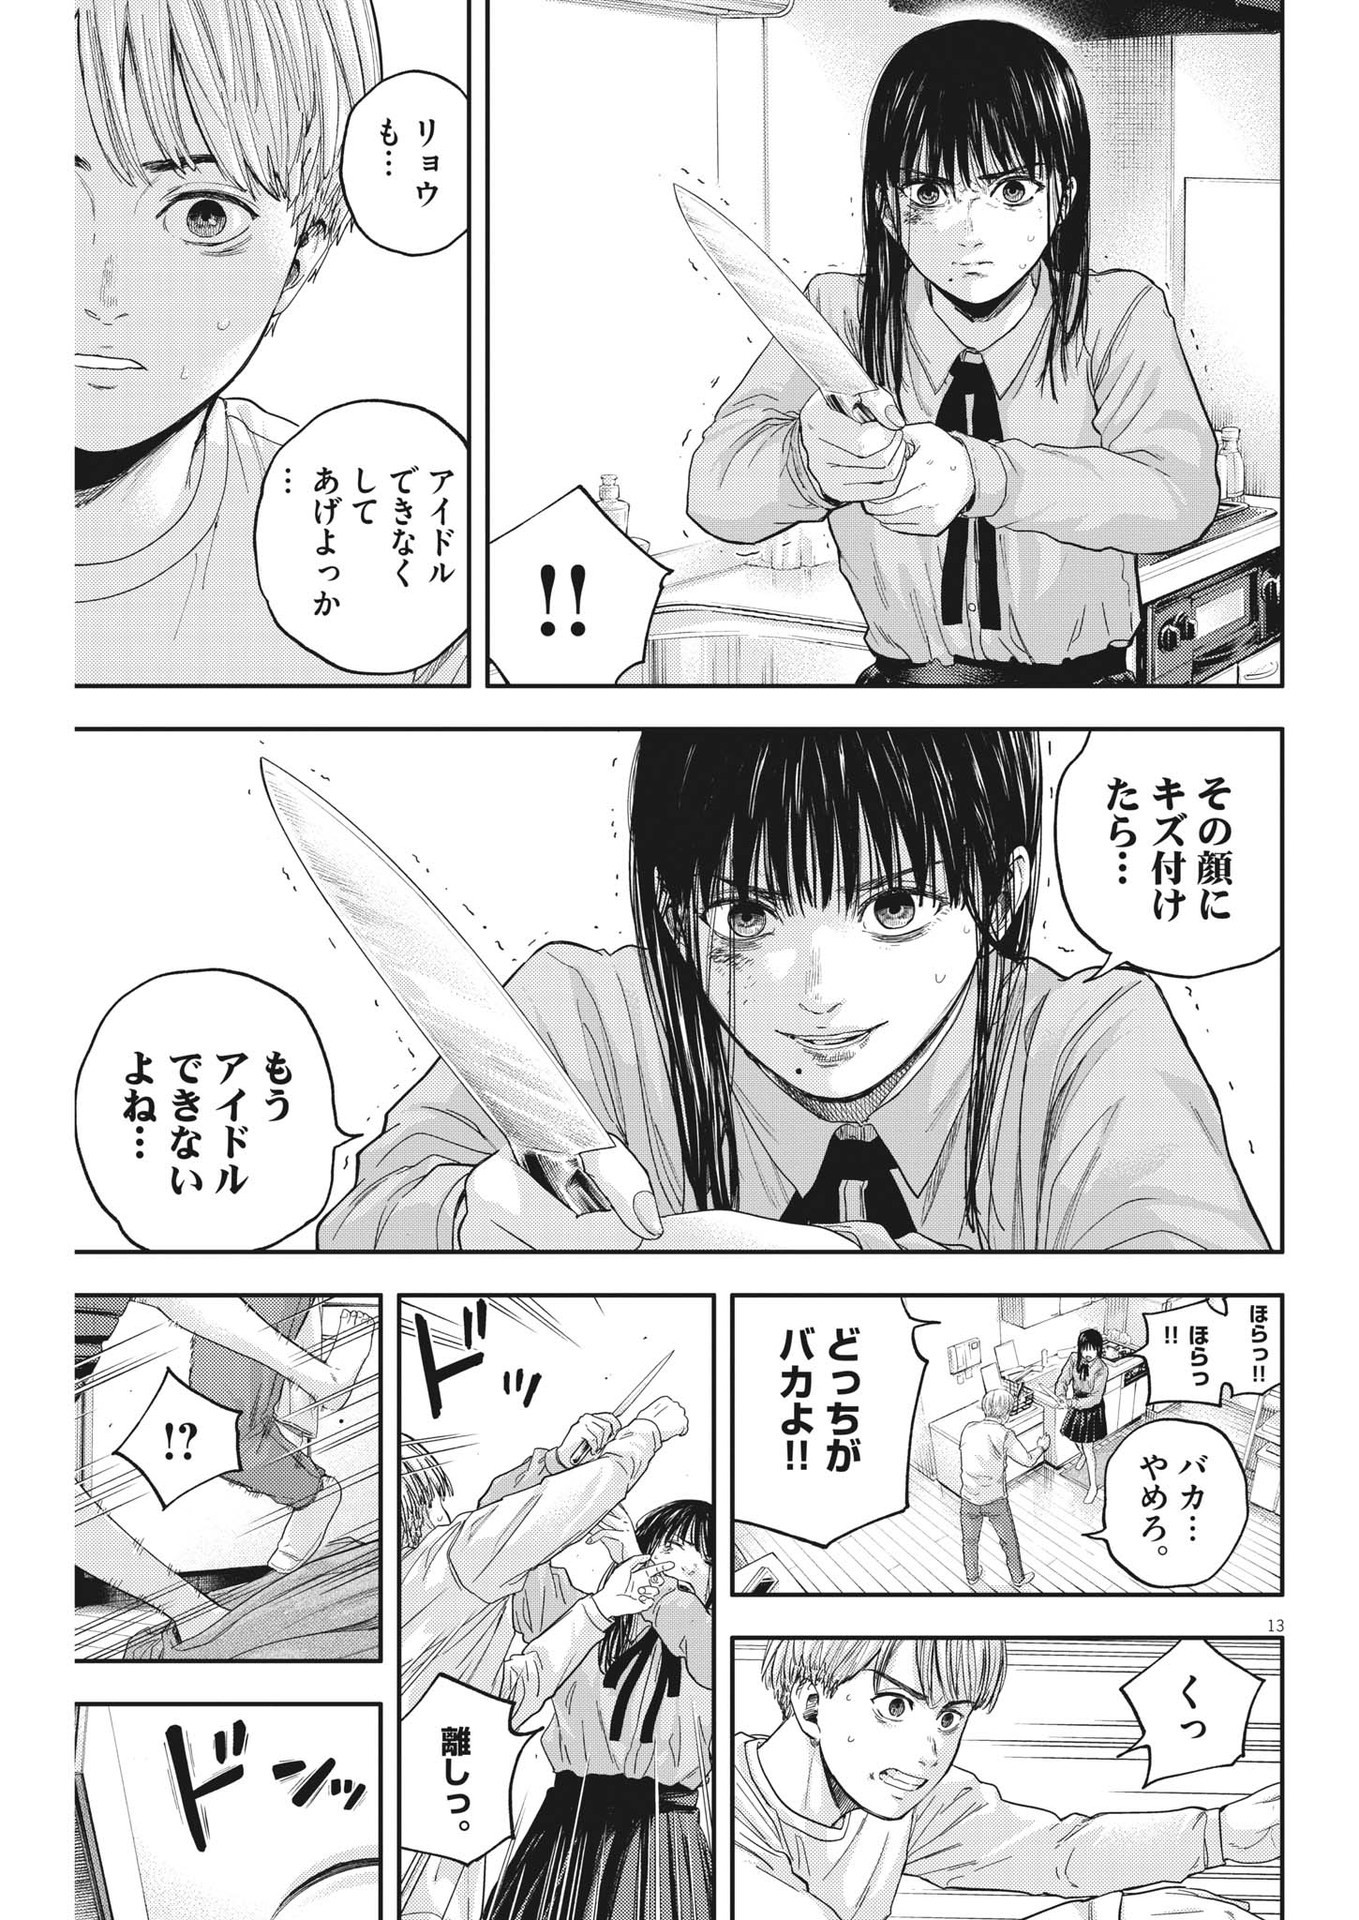 Yumenashi-sensei no Shinroshidou - Chapter 16 - Page 13